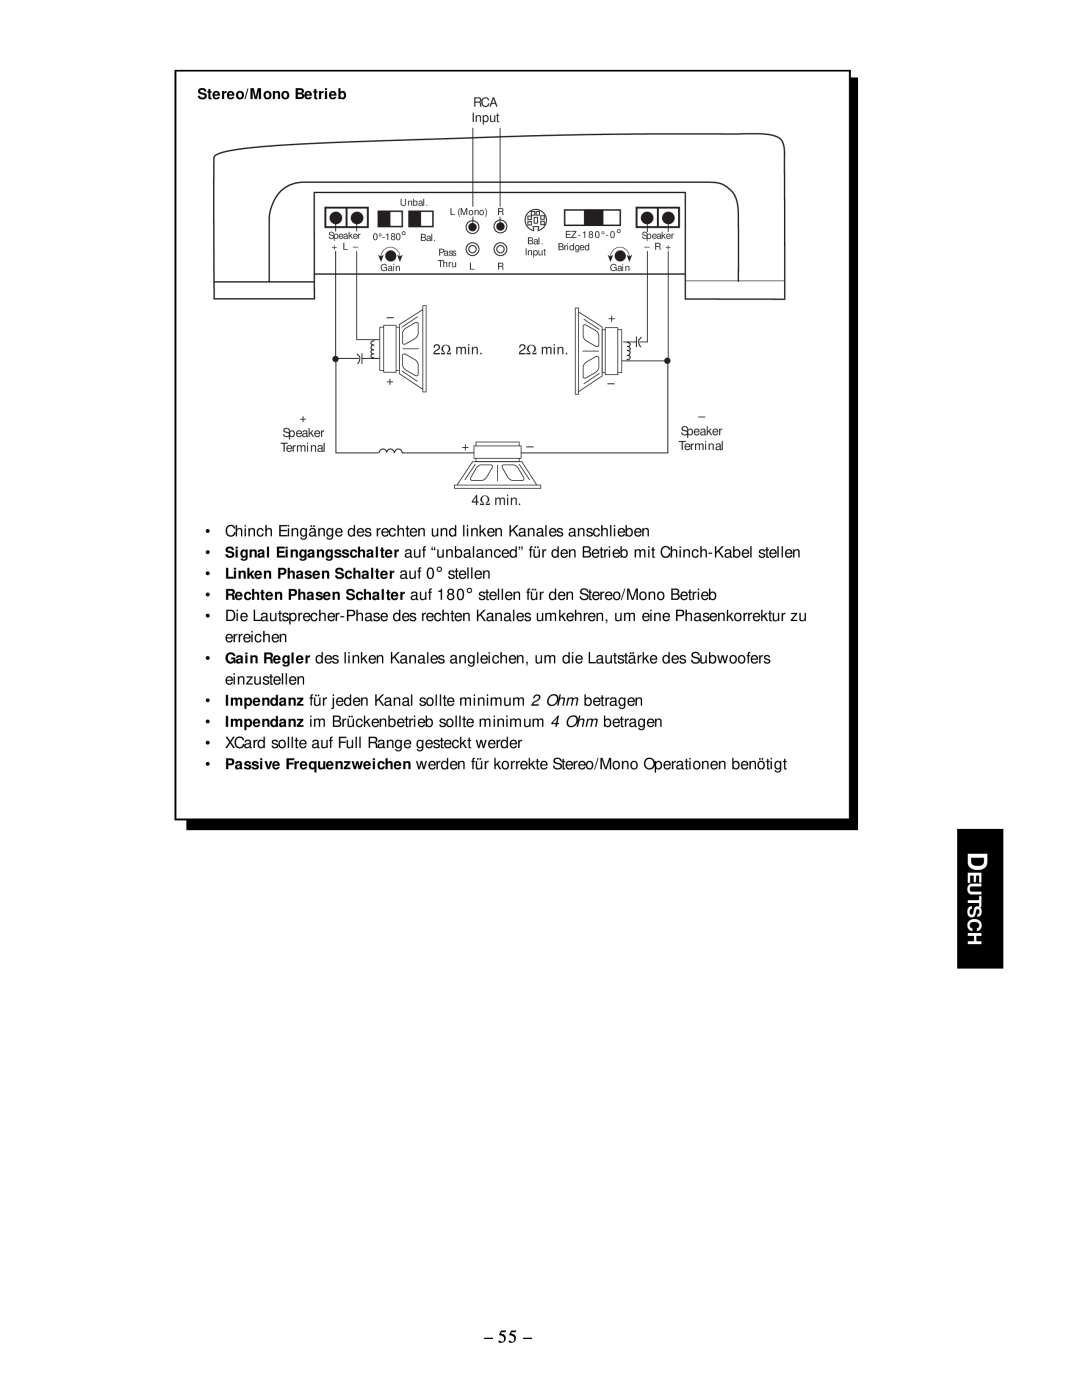 Rockford Fosgate 250.2 manual Deutsch, Stereo/Mono Betrieb, Linken Phasen Schalter auf 0 stellen 